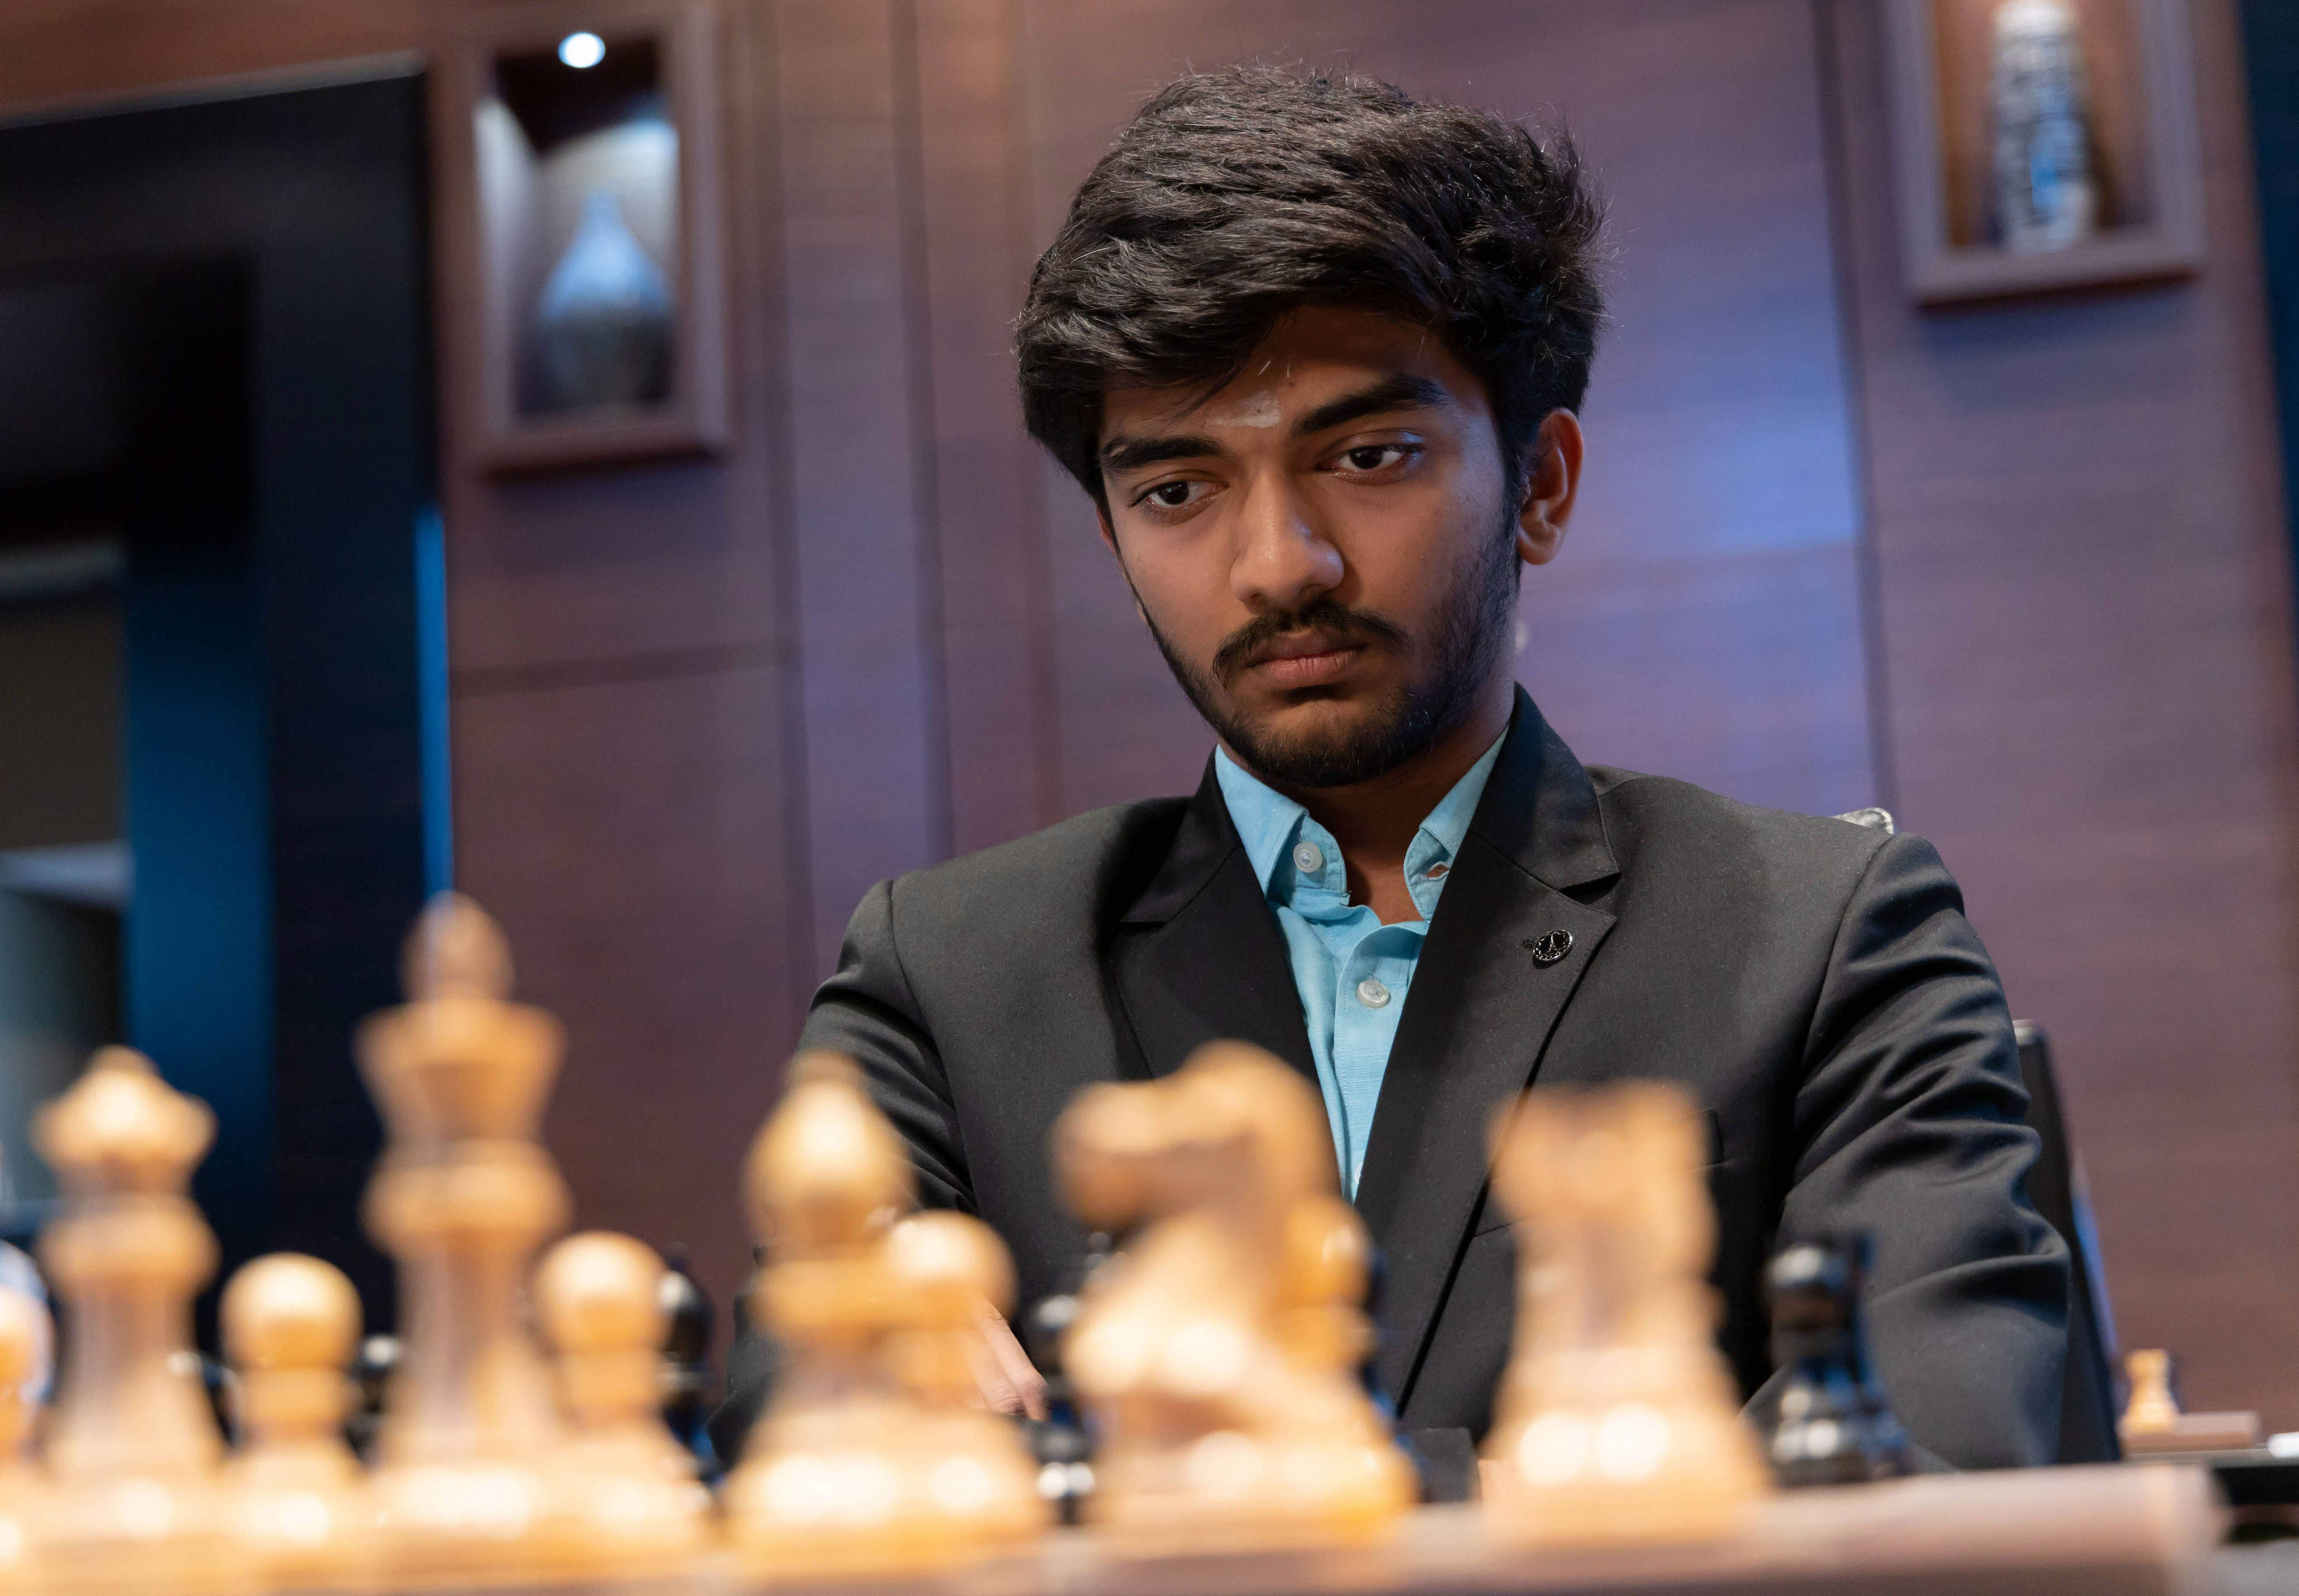 ein 17-jähriger schachspieler düpiert am kandidatenturnier sämtliche favoriten. wird er nun sogar weltmeister?